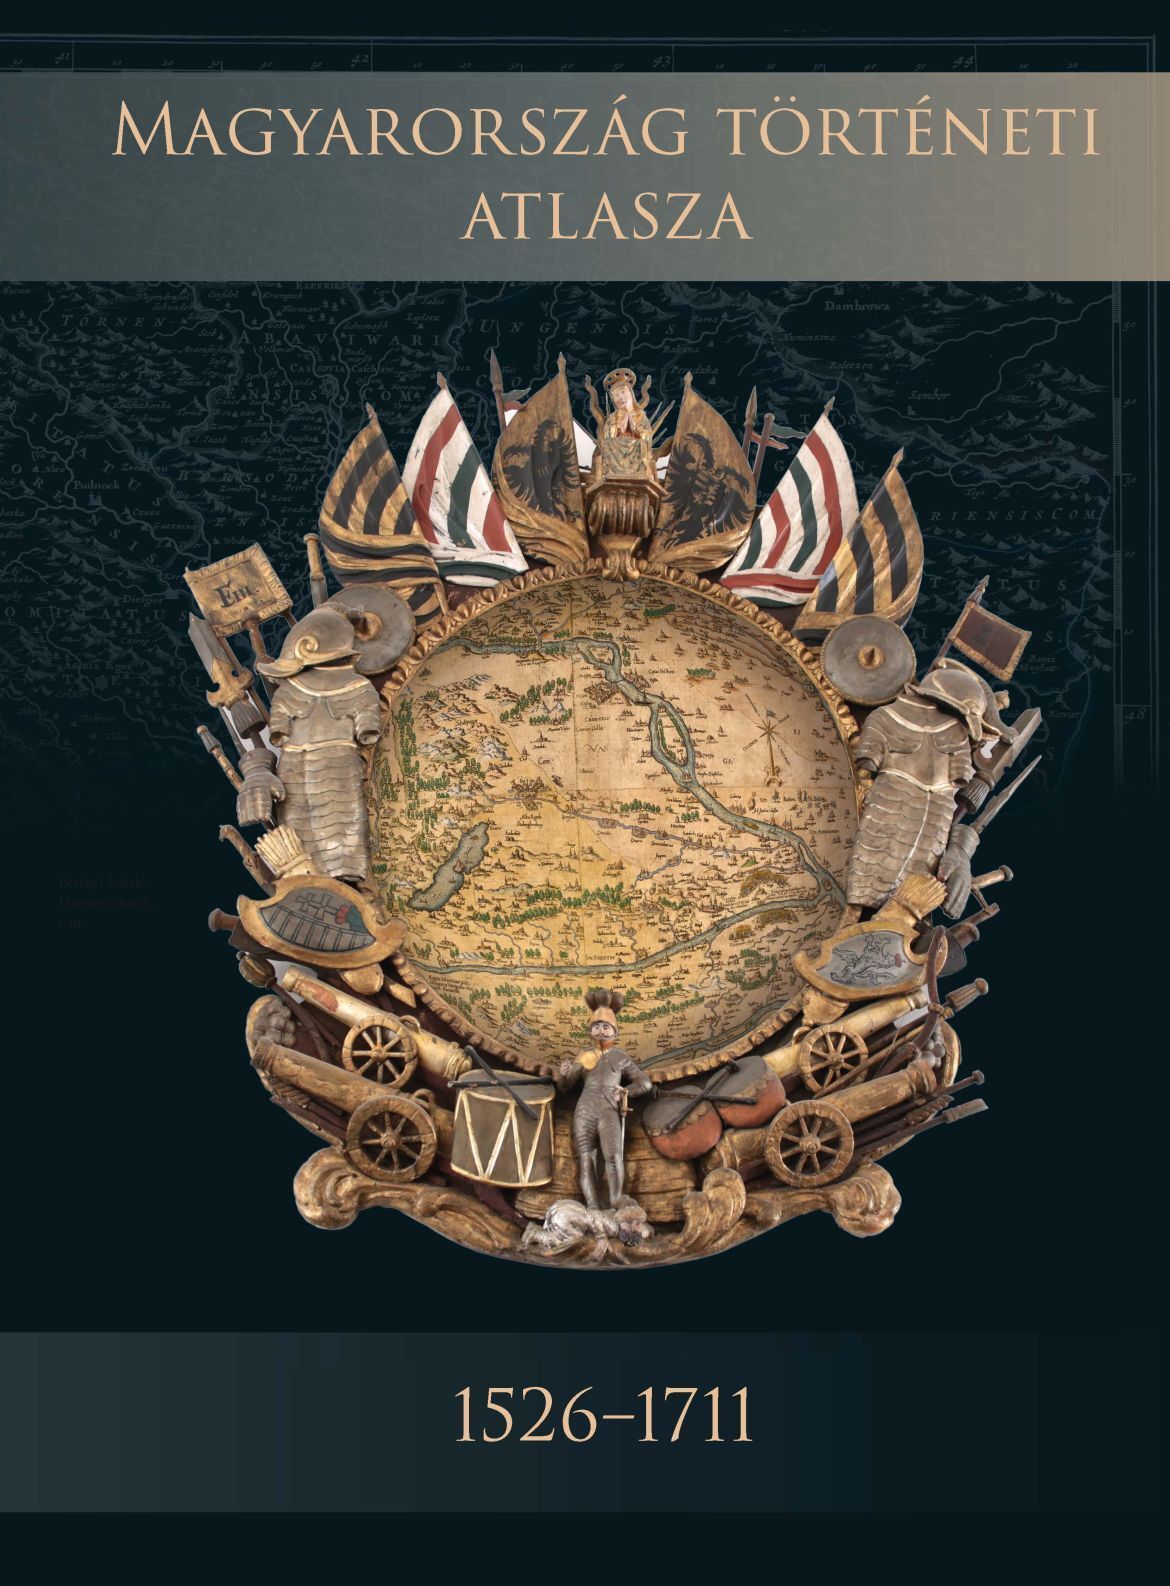 Magyarország történeti atlasza sorozat első kötete 